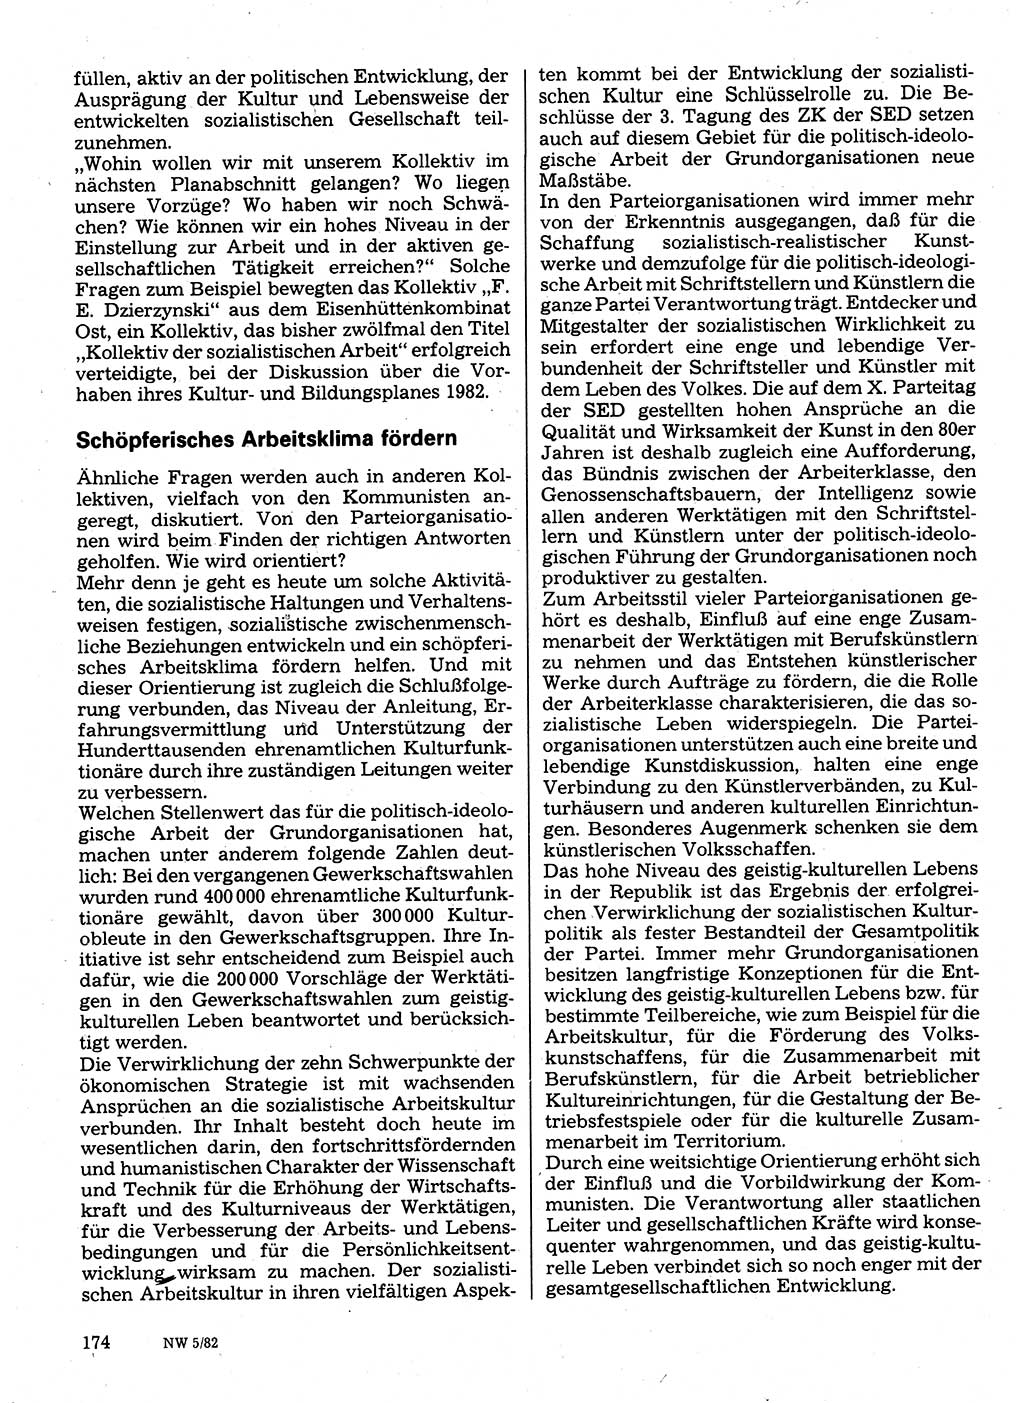 Neuer Weg (NW), Organ des Zentralkomitees (ZK) der SED (Sozialistische Einheitspartei Deutschlands) für Fragen des Parteilebens, 37. Jahrgang [Deutsche Demokratische Republik (DDR)] 1982, Seite 174 (NW ZK SED DDR 1982, S. 174)